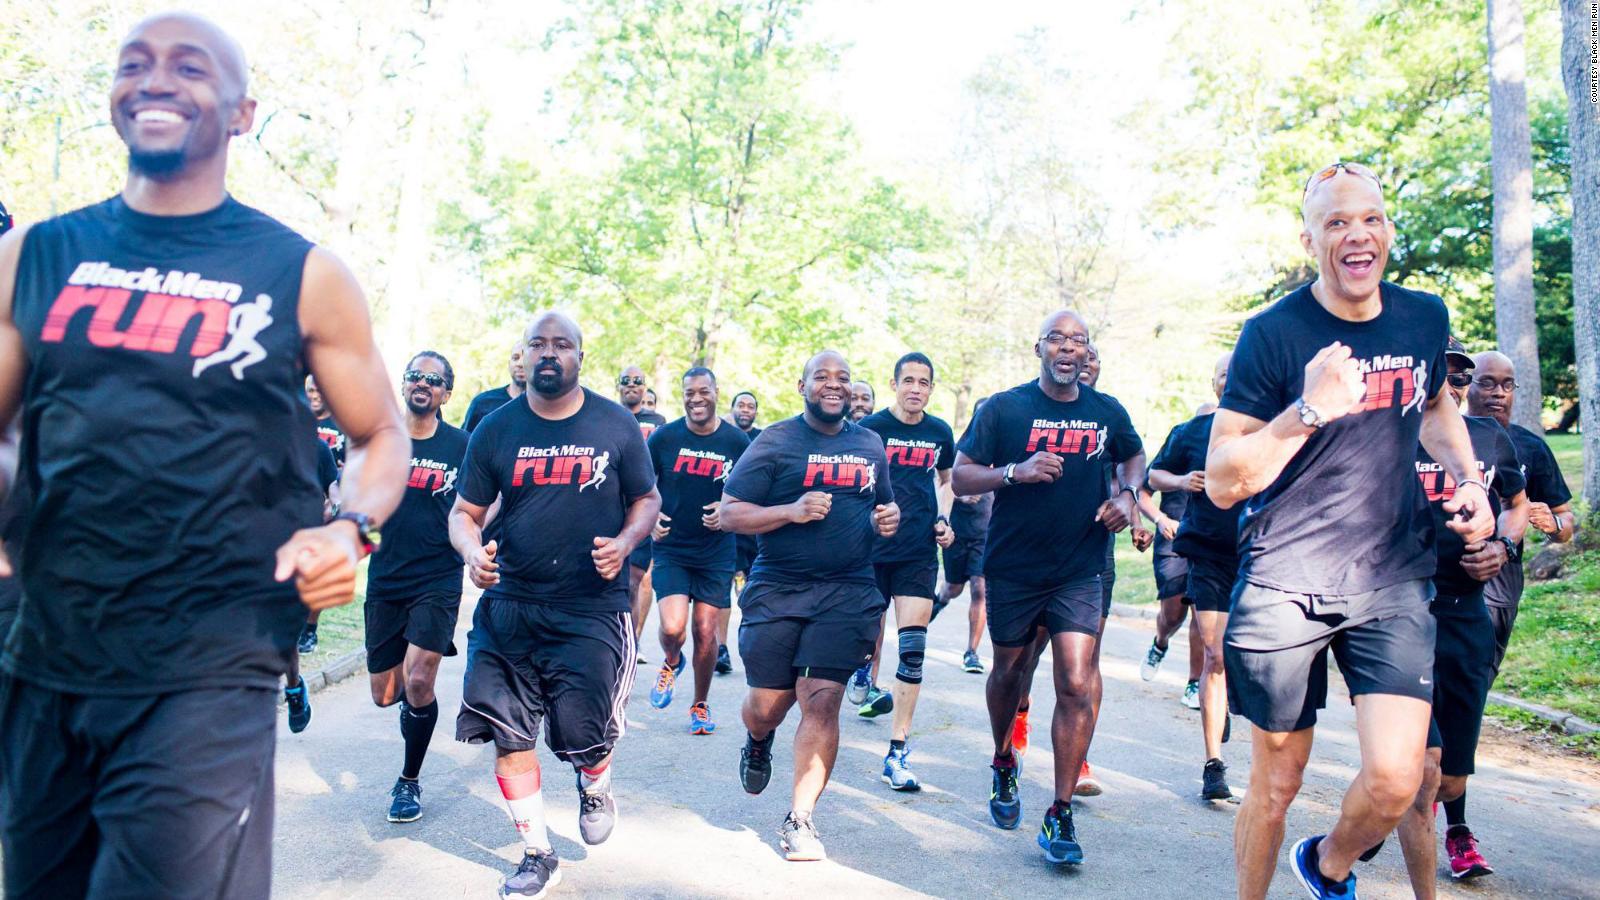 Para los corredores negros, cada zancada viene acompañada de un miedo que no pueden superar